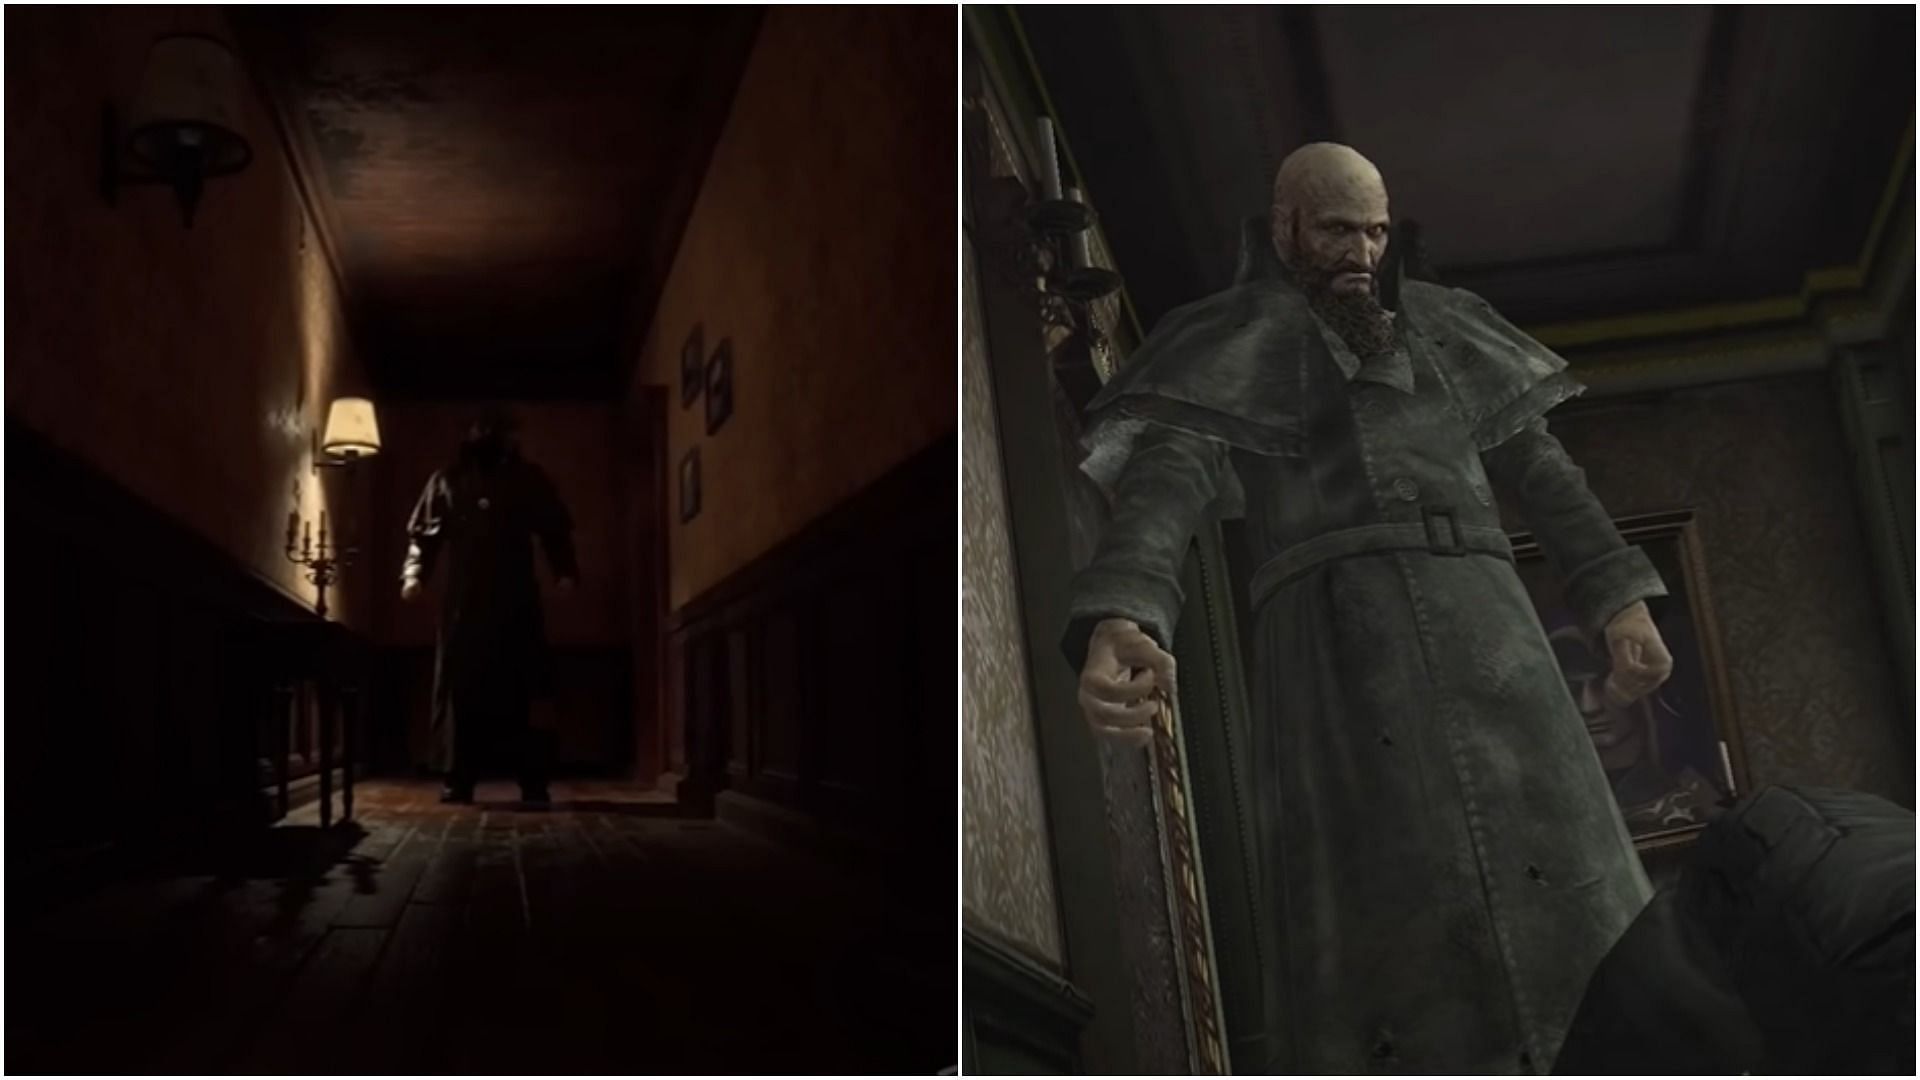 Chief Mendez compared to the original Resident Evil 4 version (Image via Capcom)